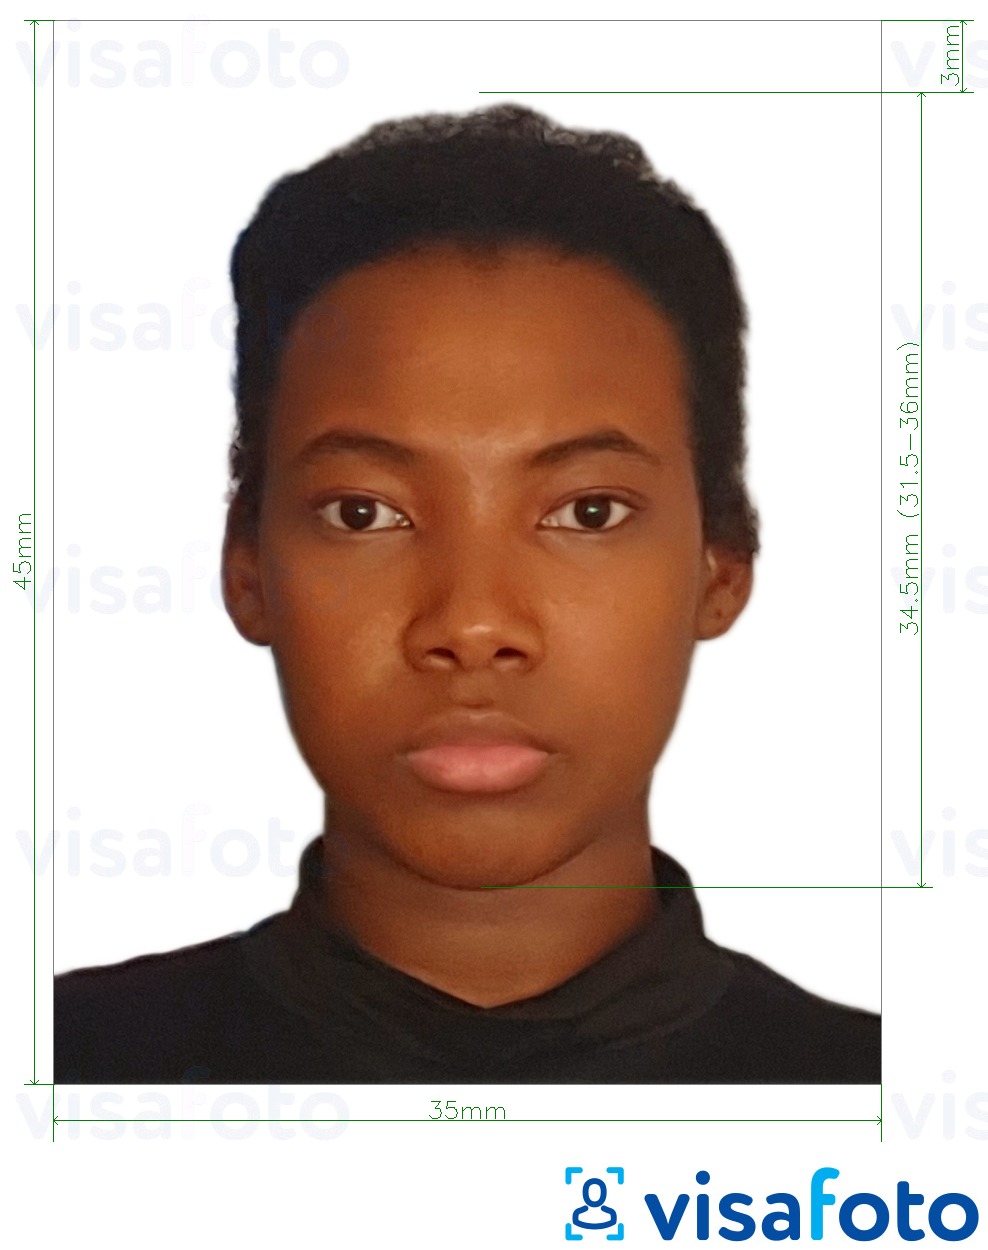 सटीक आकार विनिर्देश के साथ मलावी पासपोर्ट 4.5x3.5 सेमी (45x35 मिमी) के लिए तस्वीर का उदाहरण